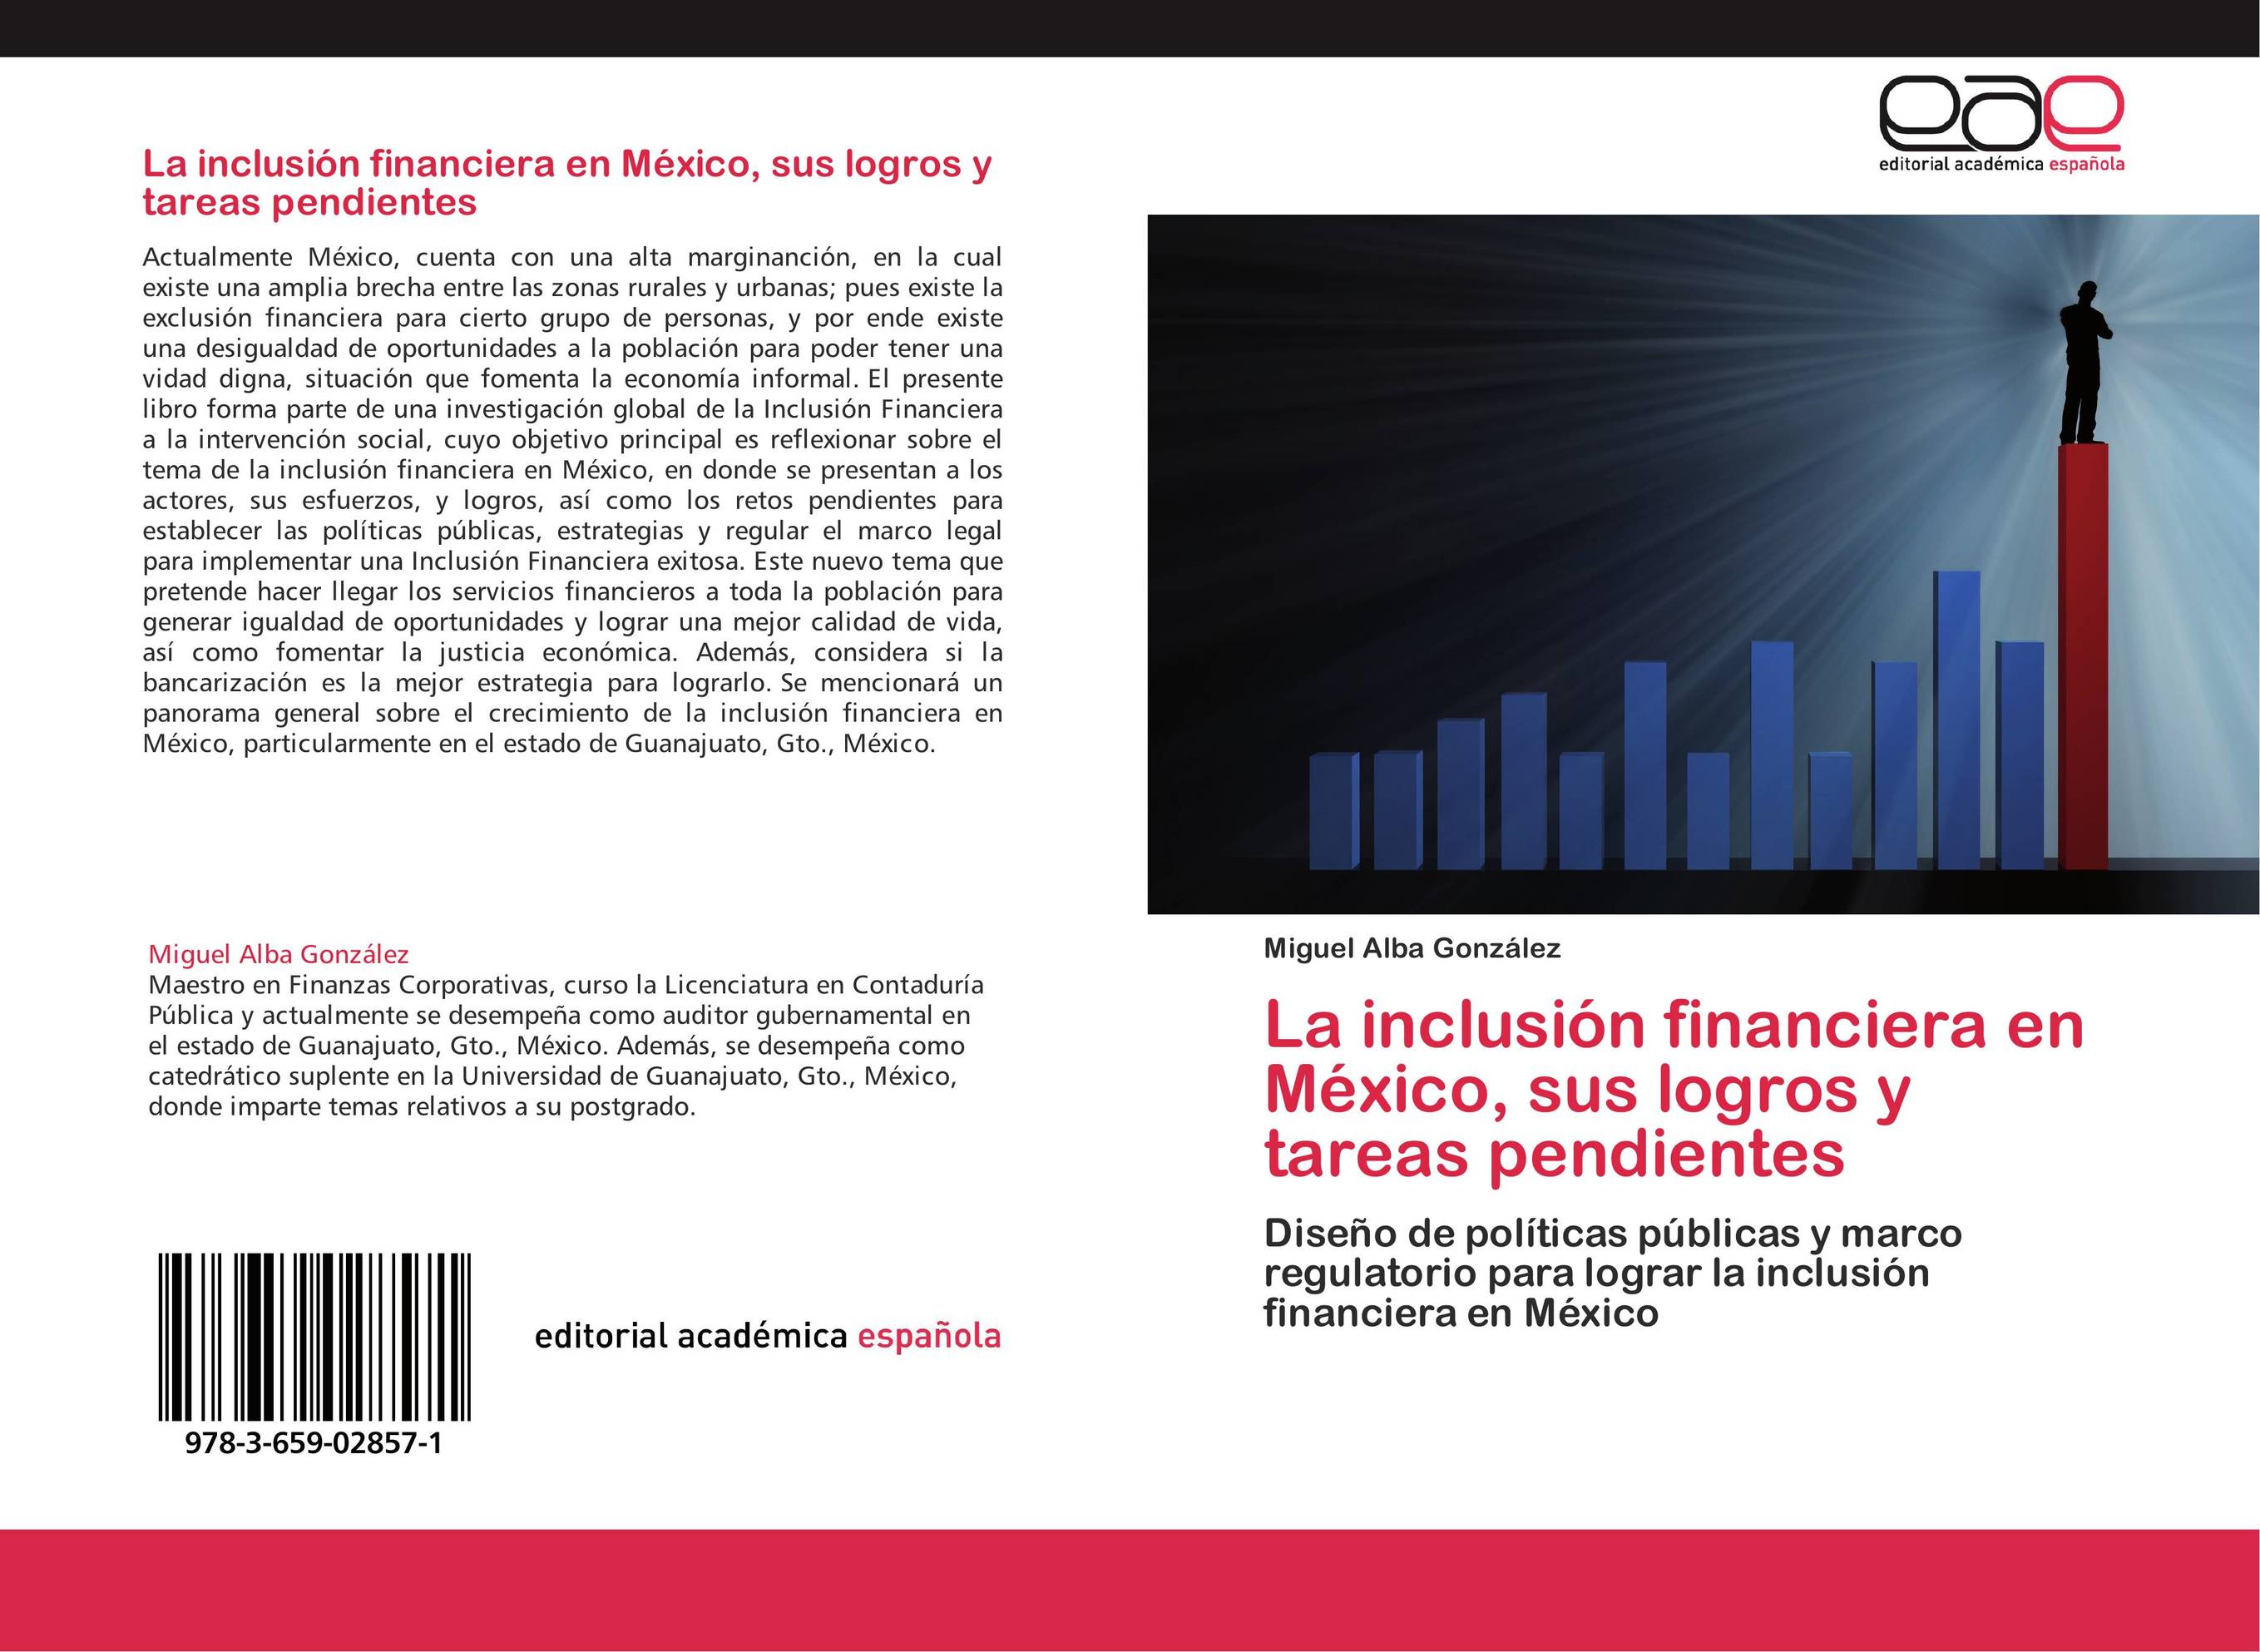 La inclusión financiera en México, sus logros y tareas pendientes